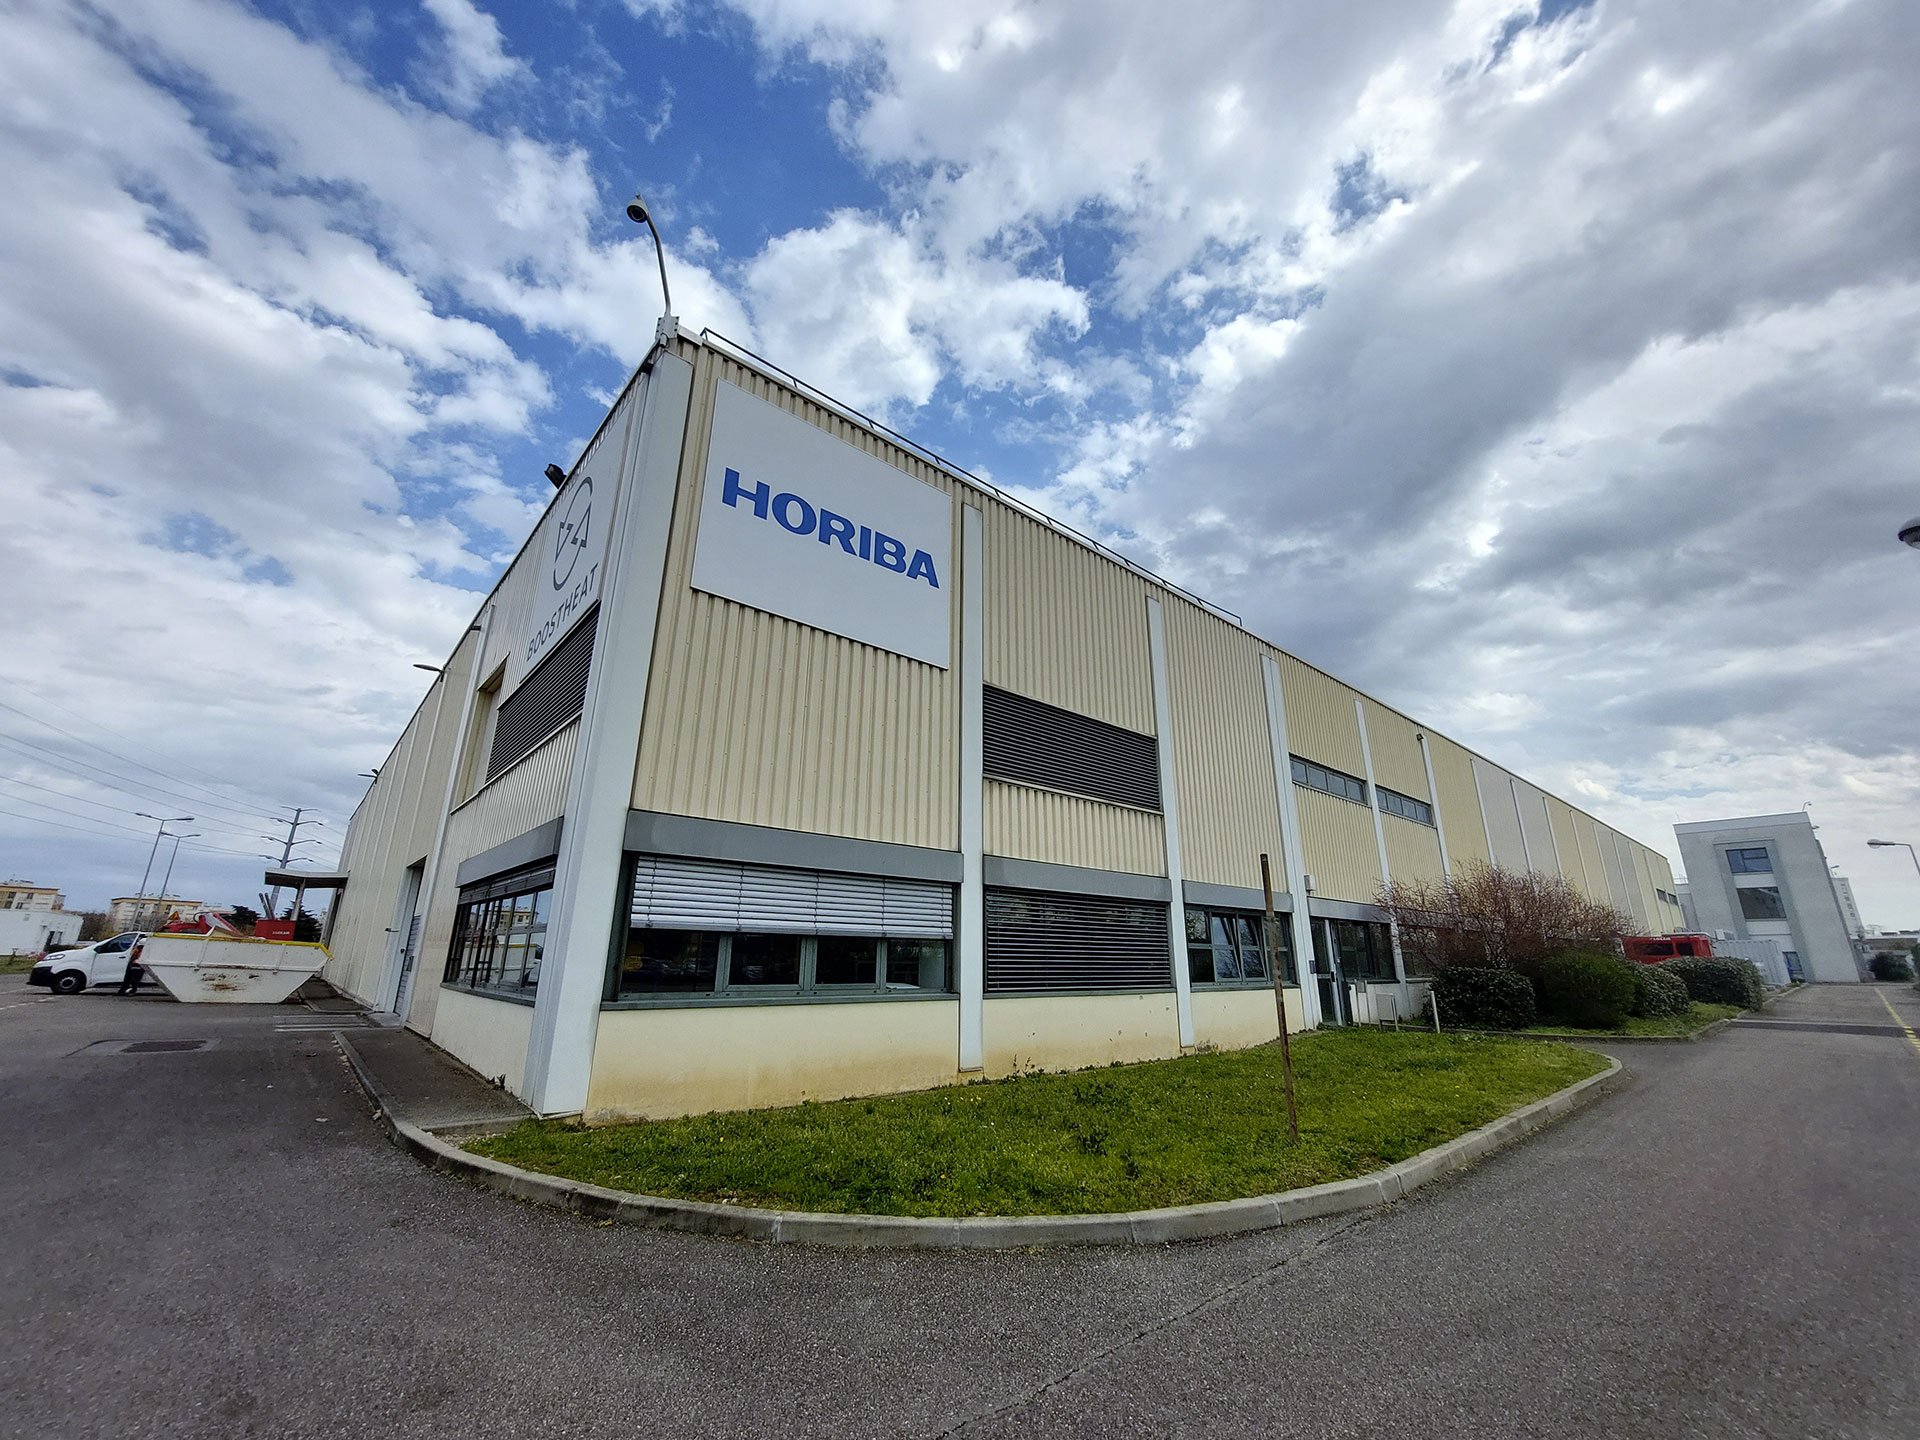 Vue extérieure du bâtiment d’HORIBA implanté sur le site d’USIN Lyon Parilly, au 41 boulevard Marcel Sembat à Vénissieux (parc industriel urbain Lyon Parilly Factories, métropole de Lyon)